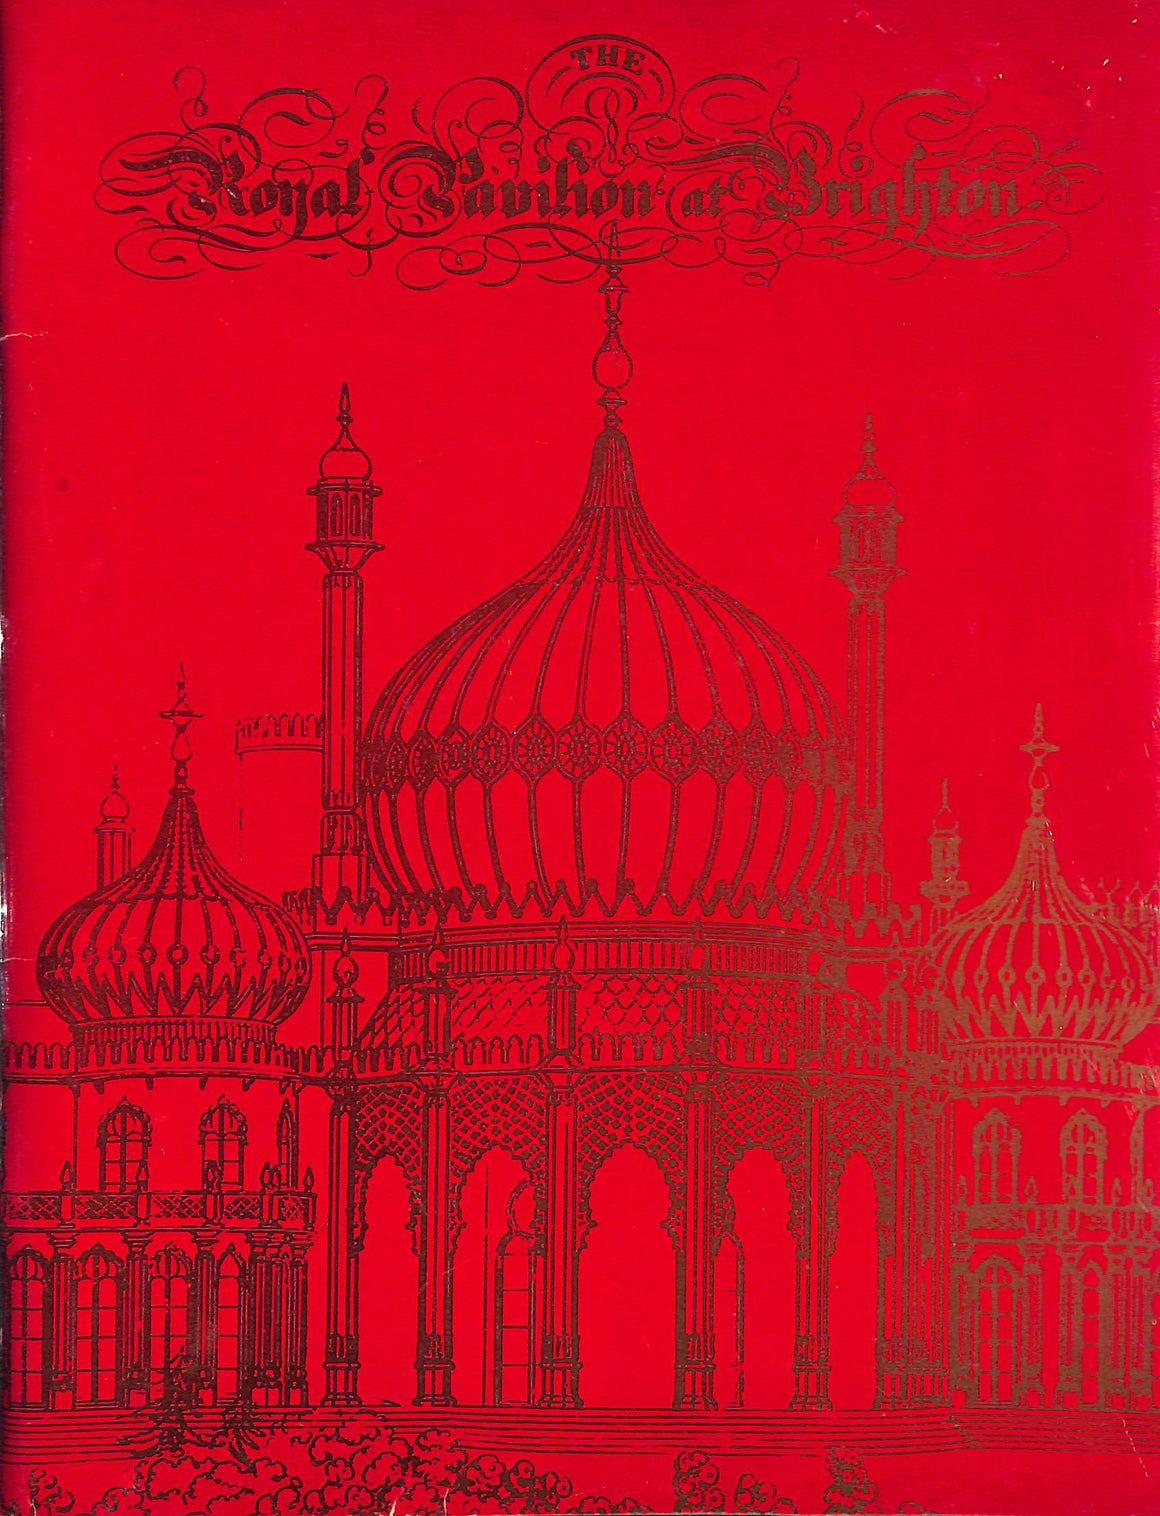 "The Royal Pavilion At Brighton" 1977